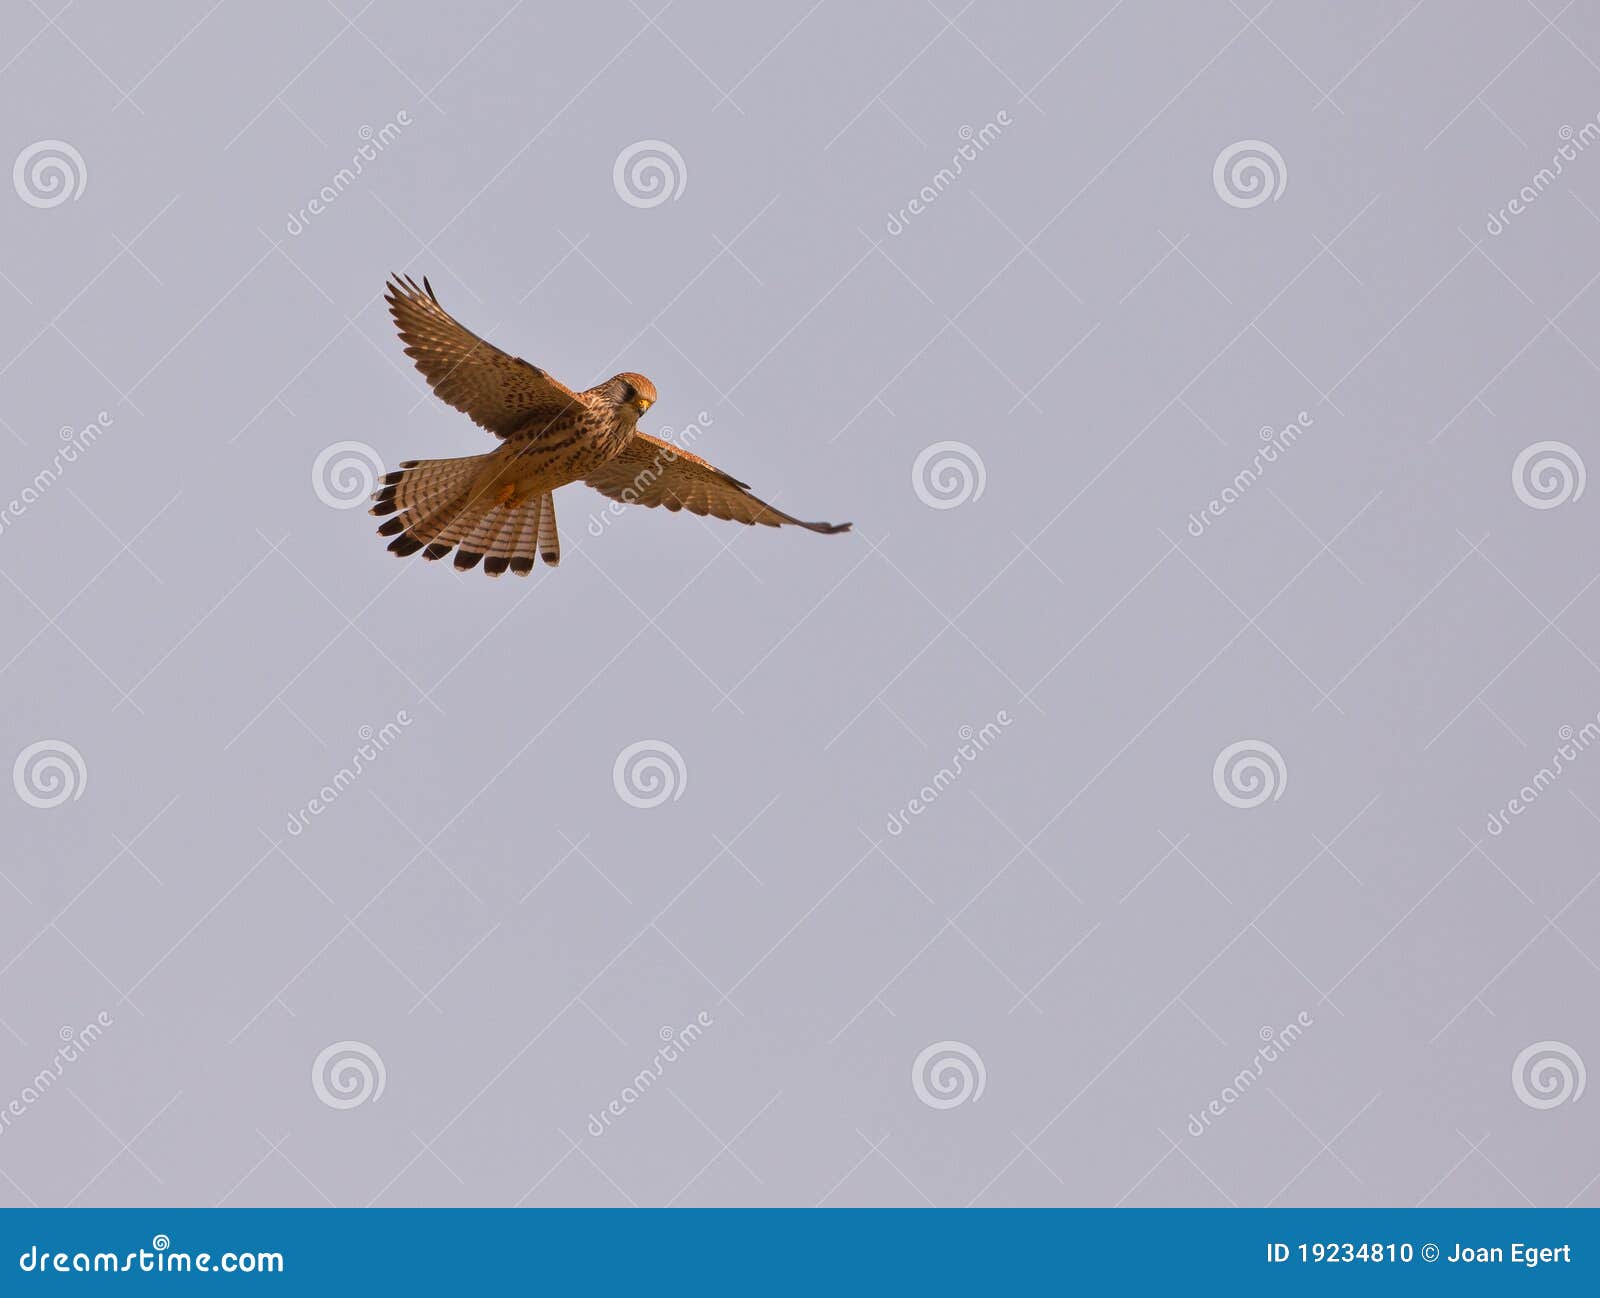 female lesser kestrel hovering